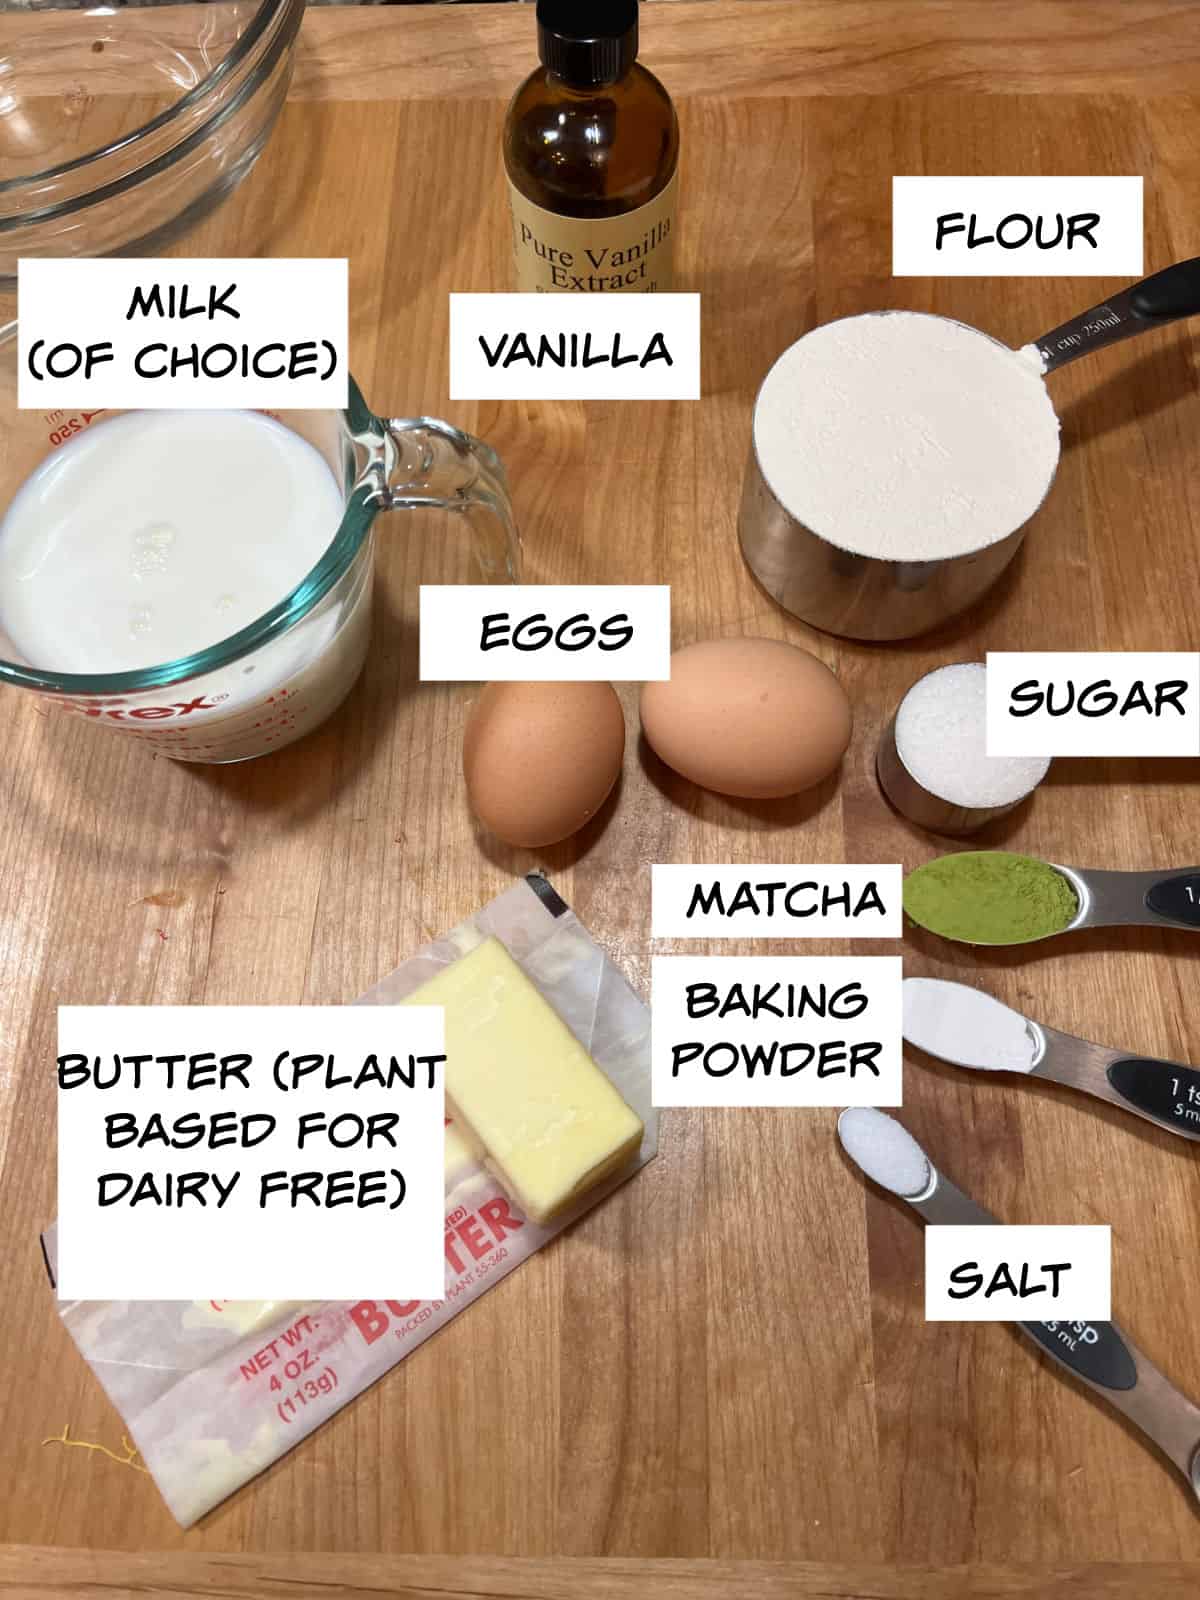 ingredients: milk, vanilla, flour, eggs, sugar, matcha, baking powder, salt, and butter.